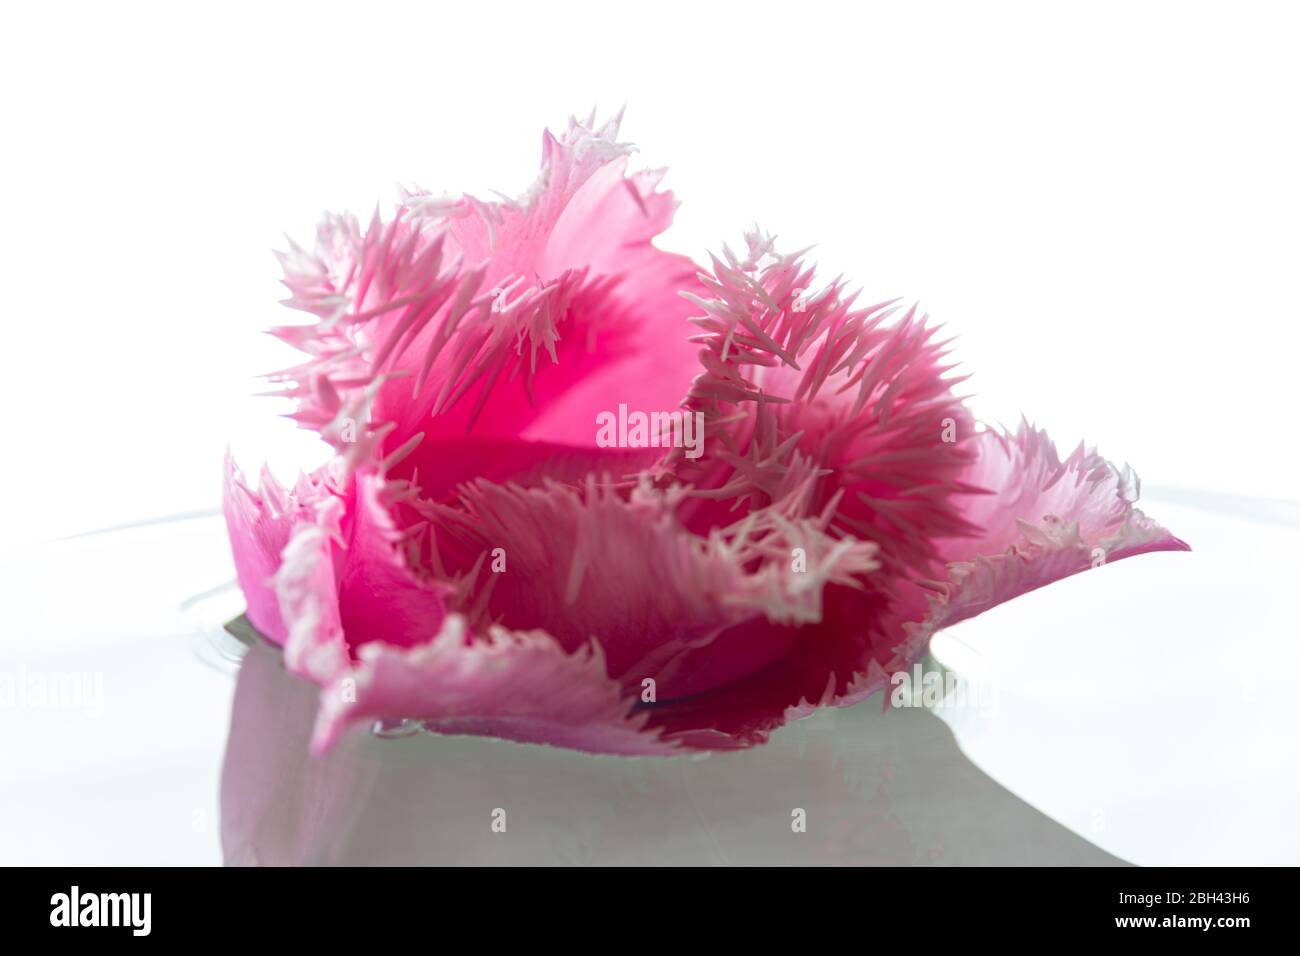 Eine Nahaufnahme einer rosa Tulpenblume mit Fransen auf weißem Hintergrund. Diese Nahaufnahme zeigt die zarten Fransen auf den Blütenblättern. Stockfoto